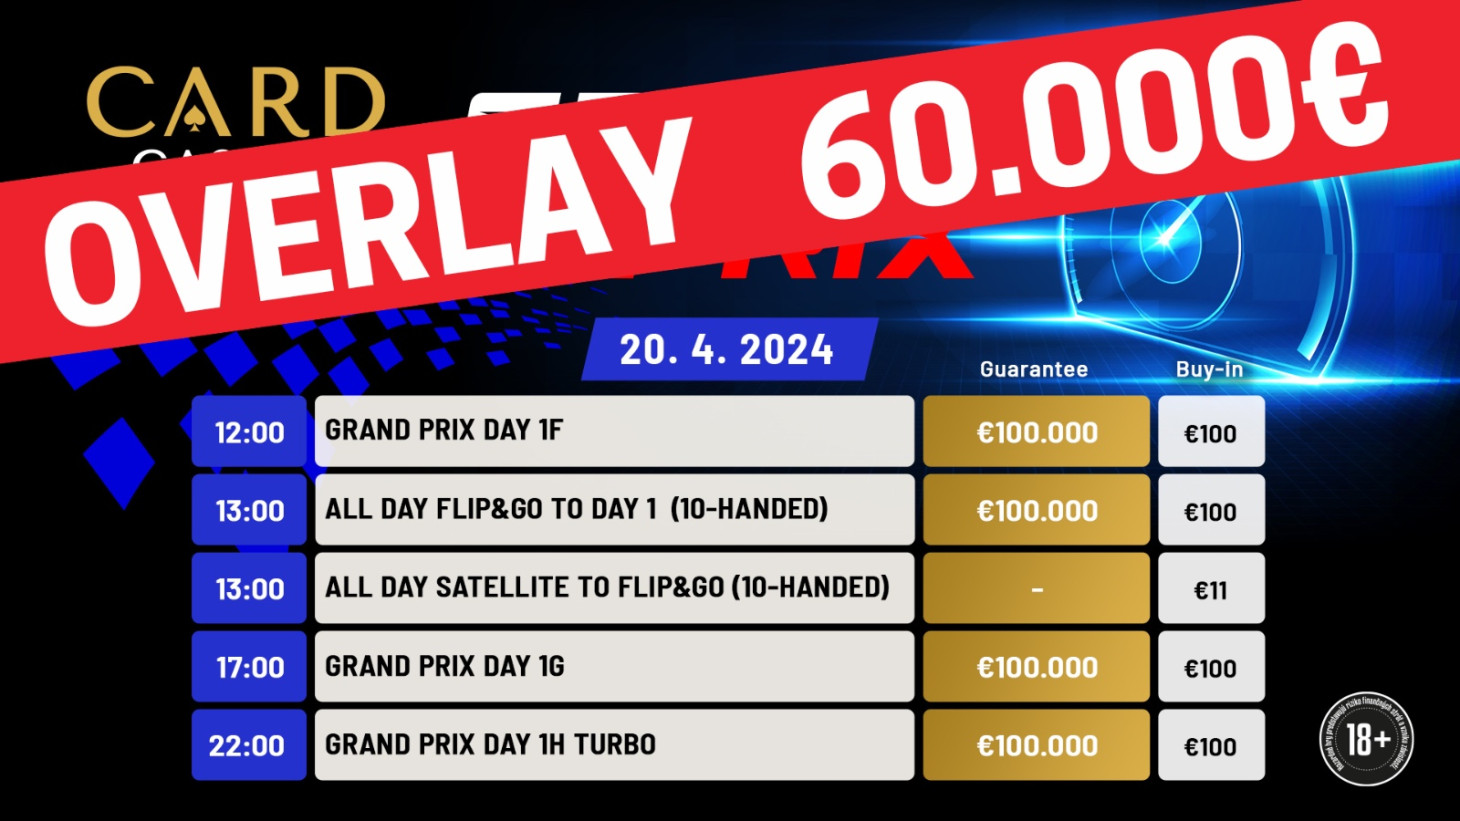 Grand Prix má za sebou úvodné flighty. Turnaju hrozí mega OVERLAY 60.000€.